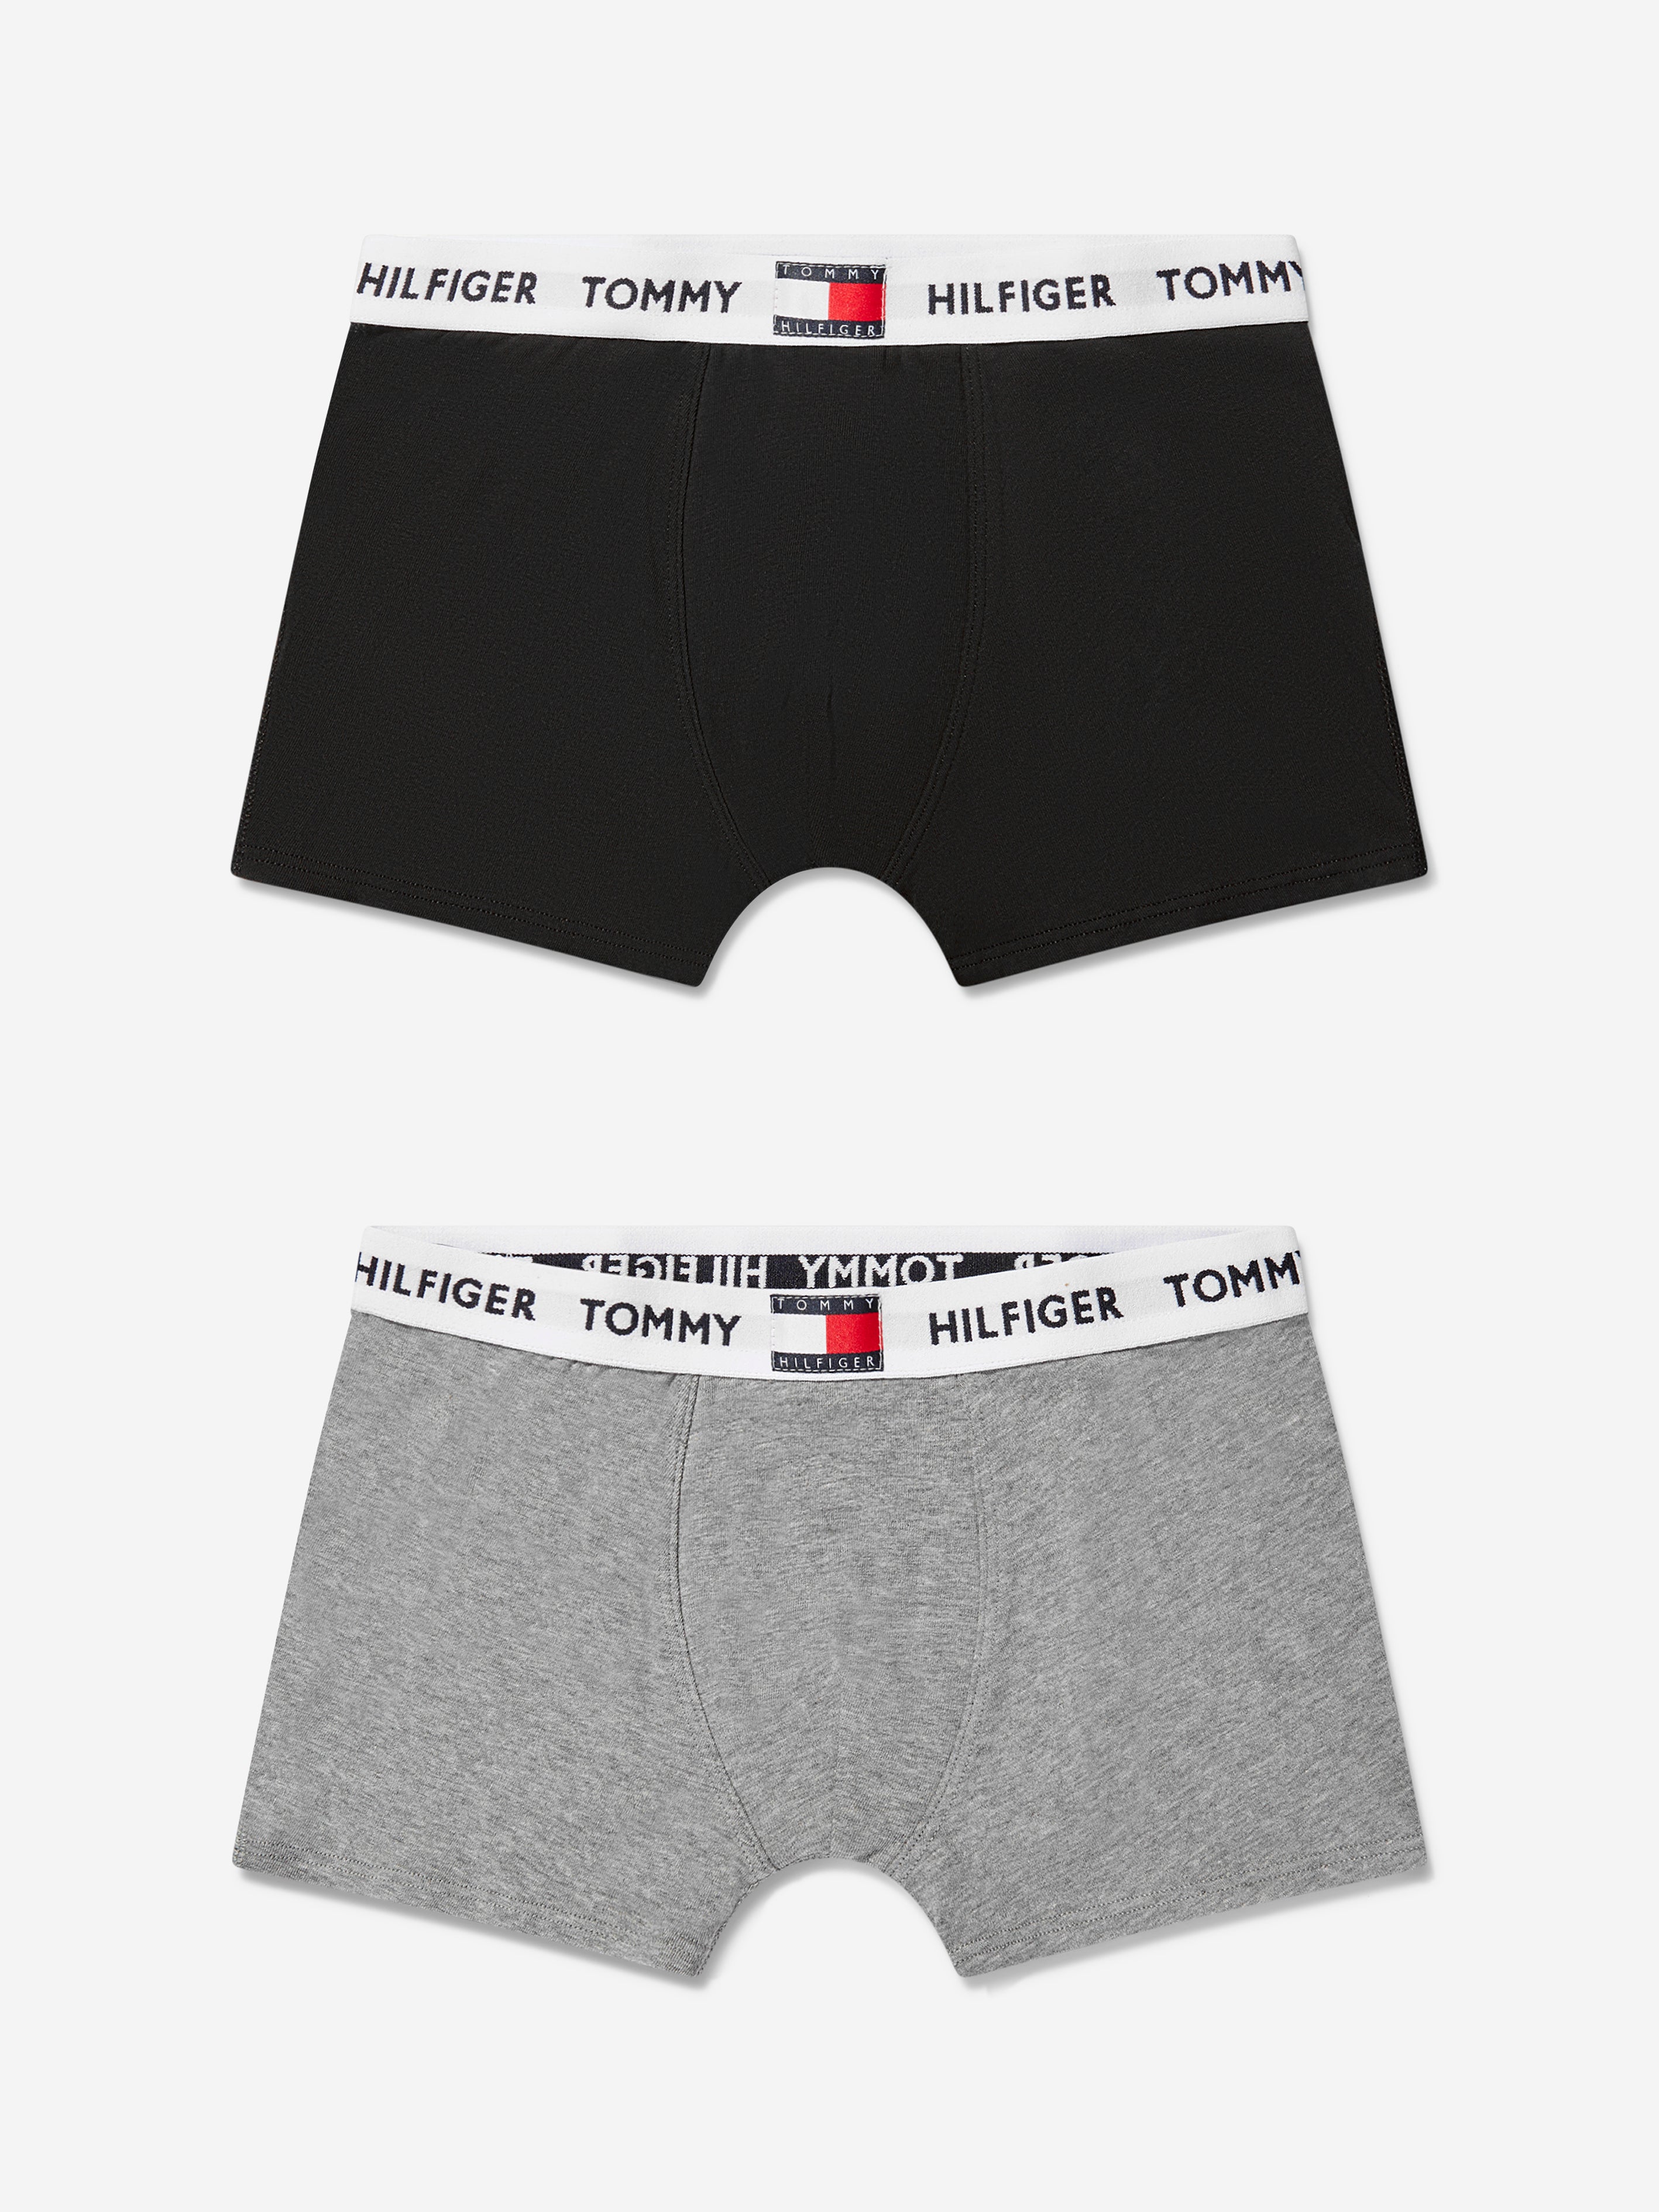 Tommy Hilfiger, Tommy Hilfiger 2 Pack Boxer Shorts, Kids, Trunks